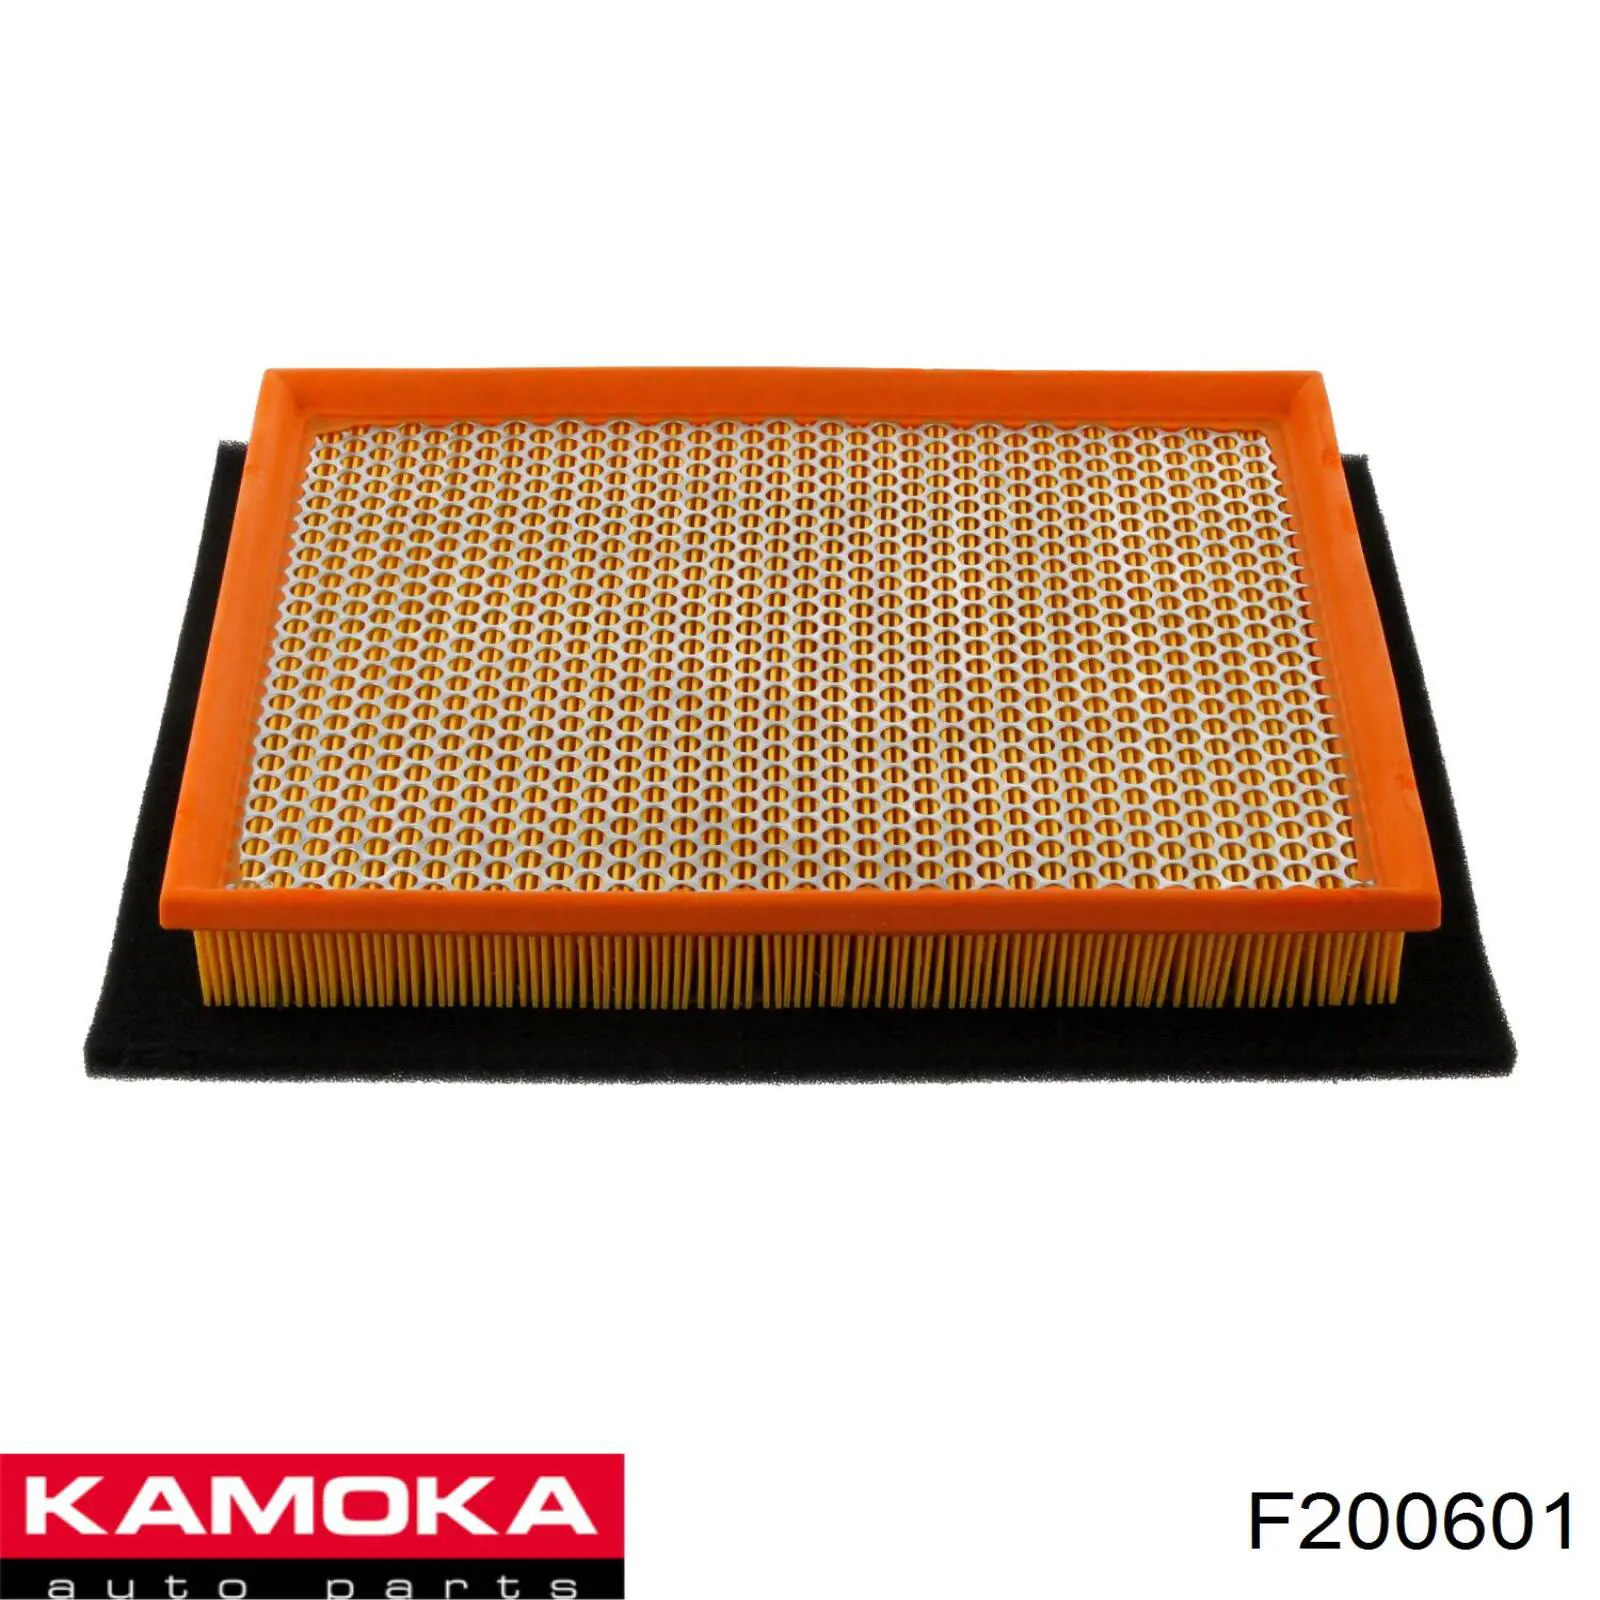 F200601 Kamoka filtro de aire